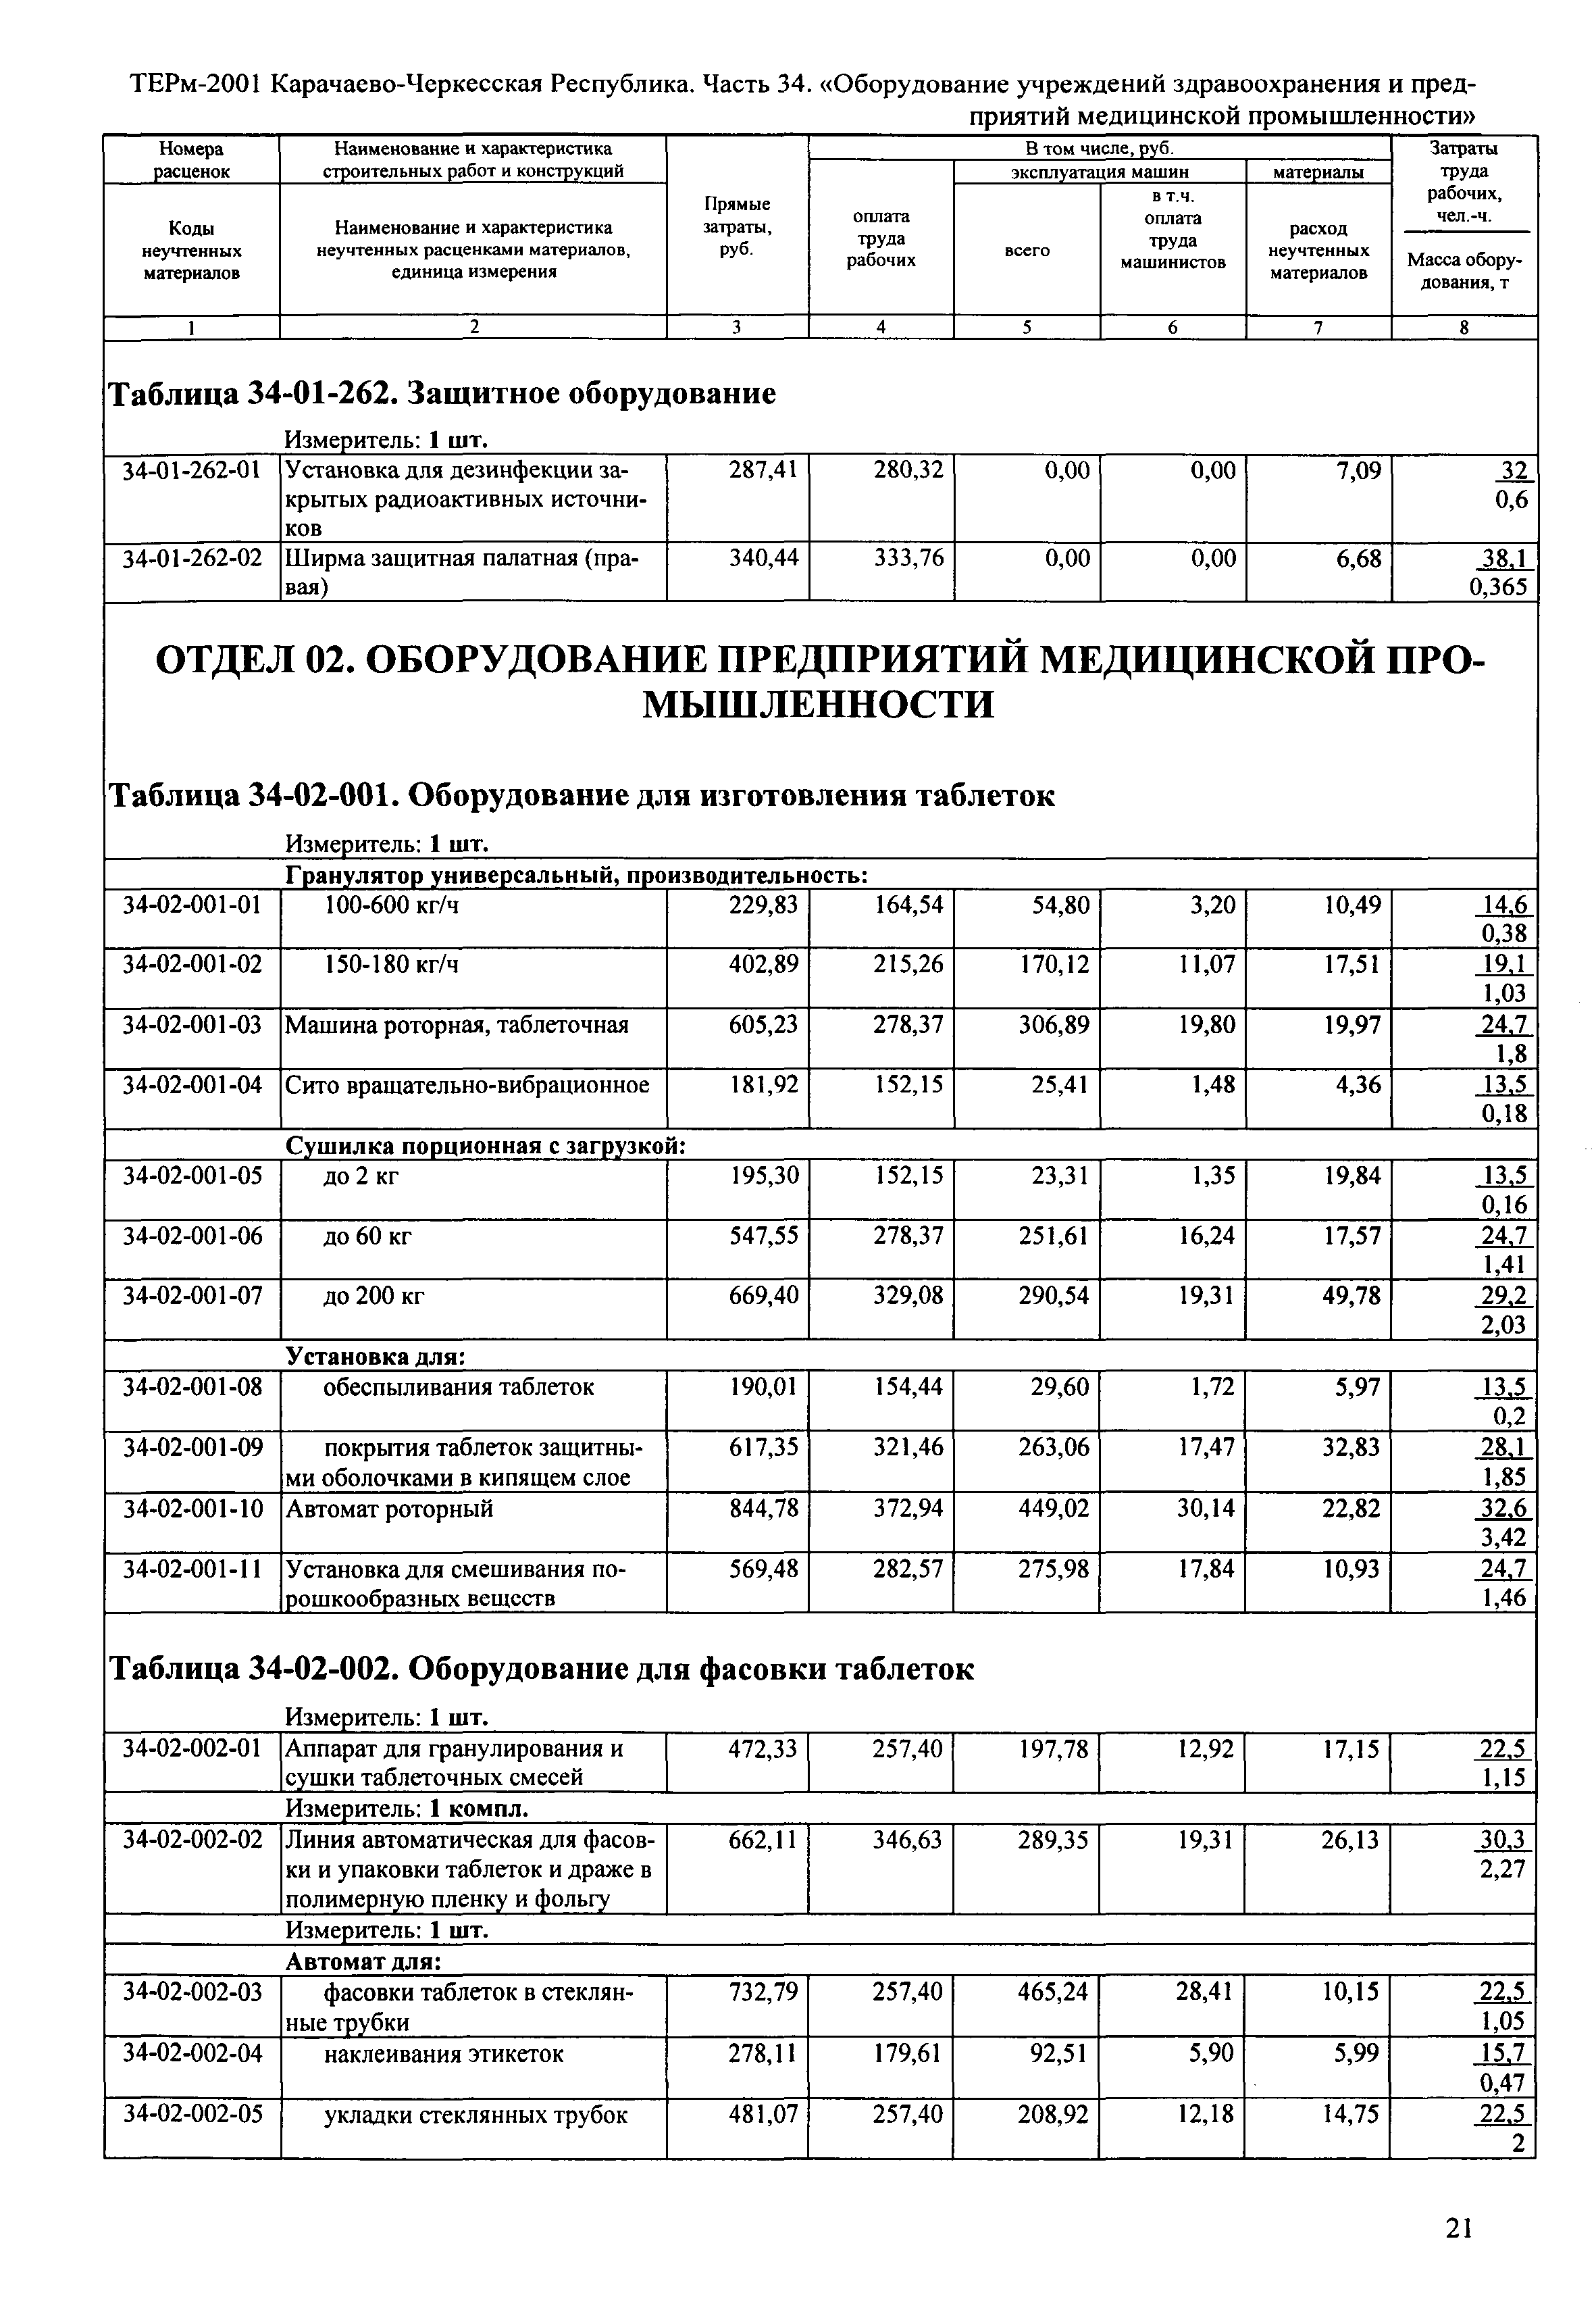 ТЕРм Карачаево-Черкесская Республика 34-2001